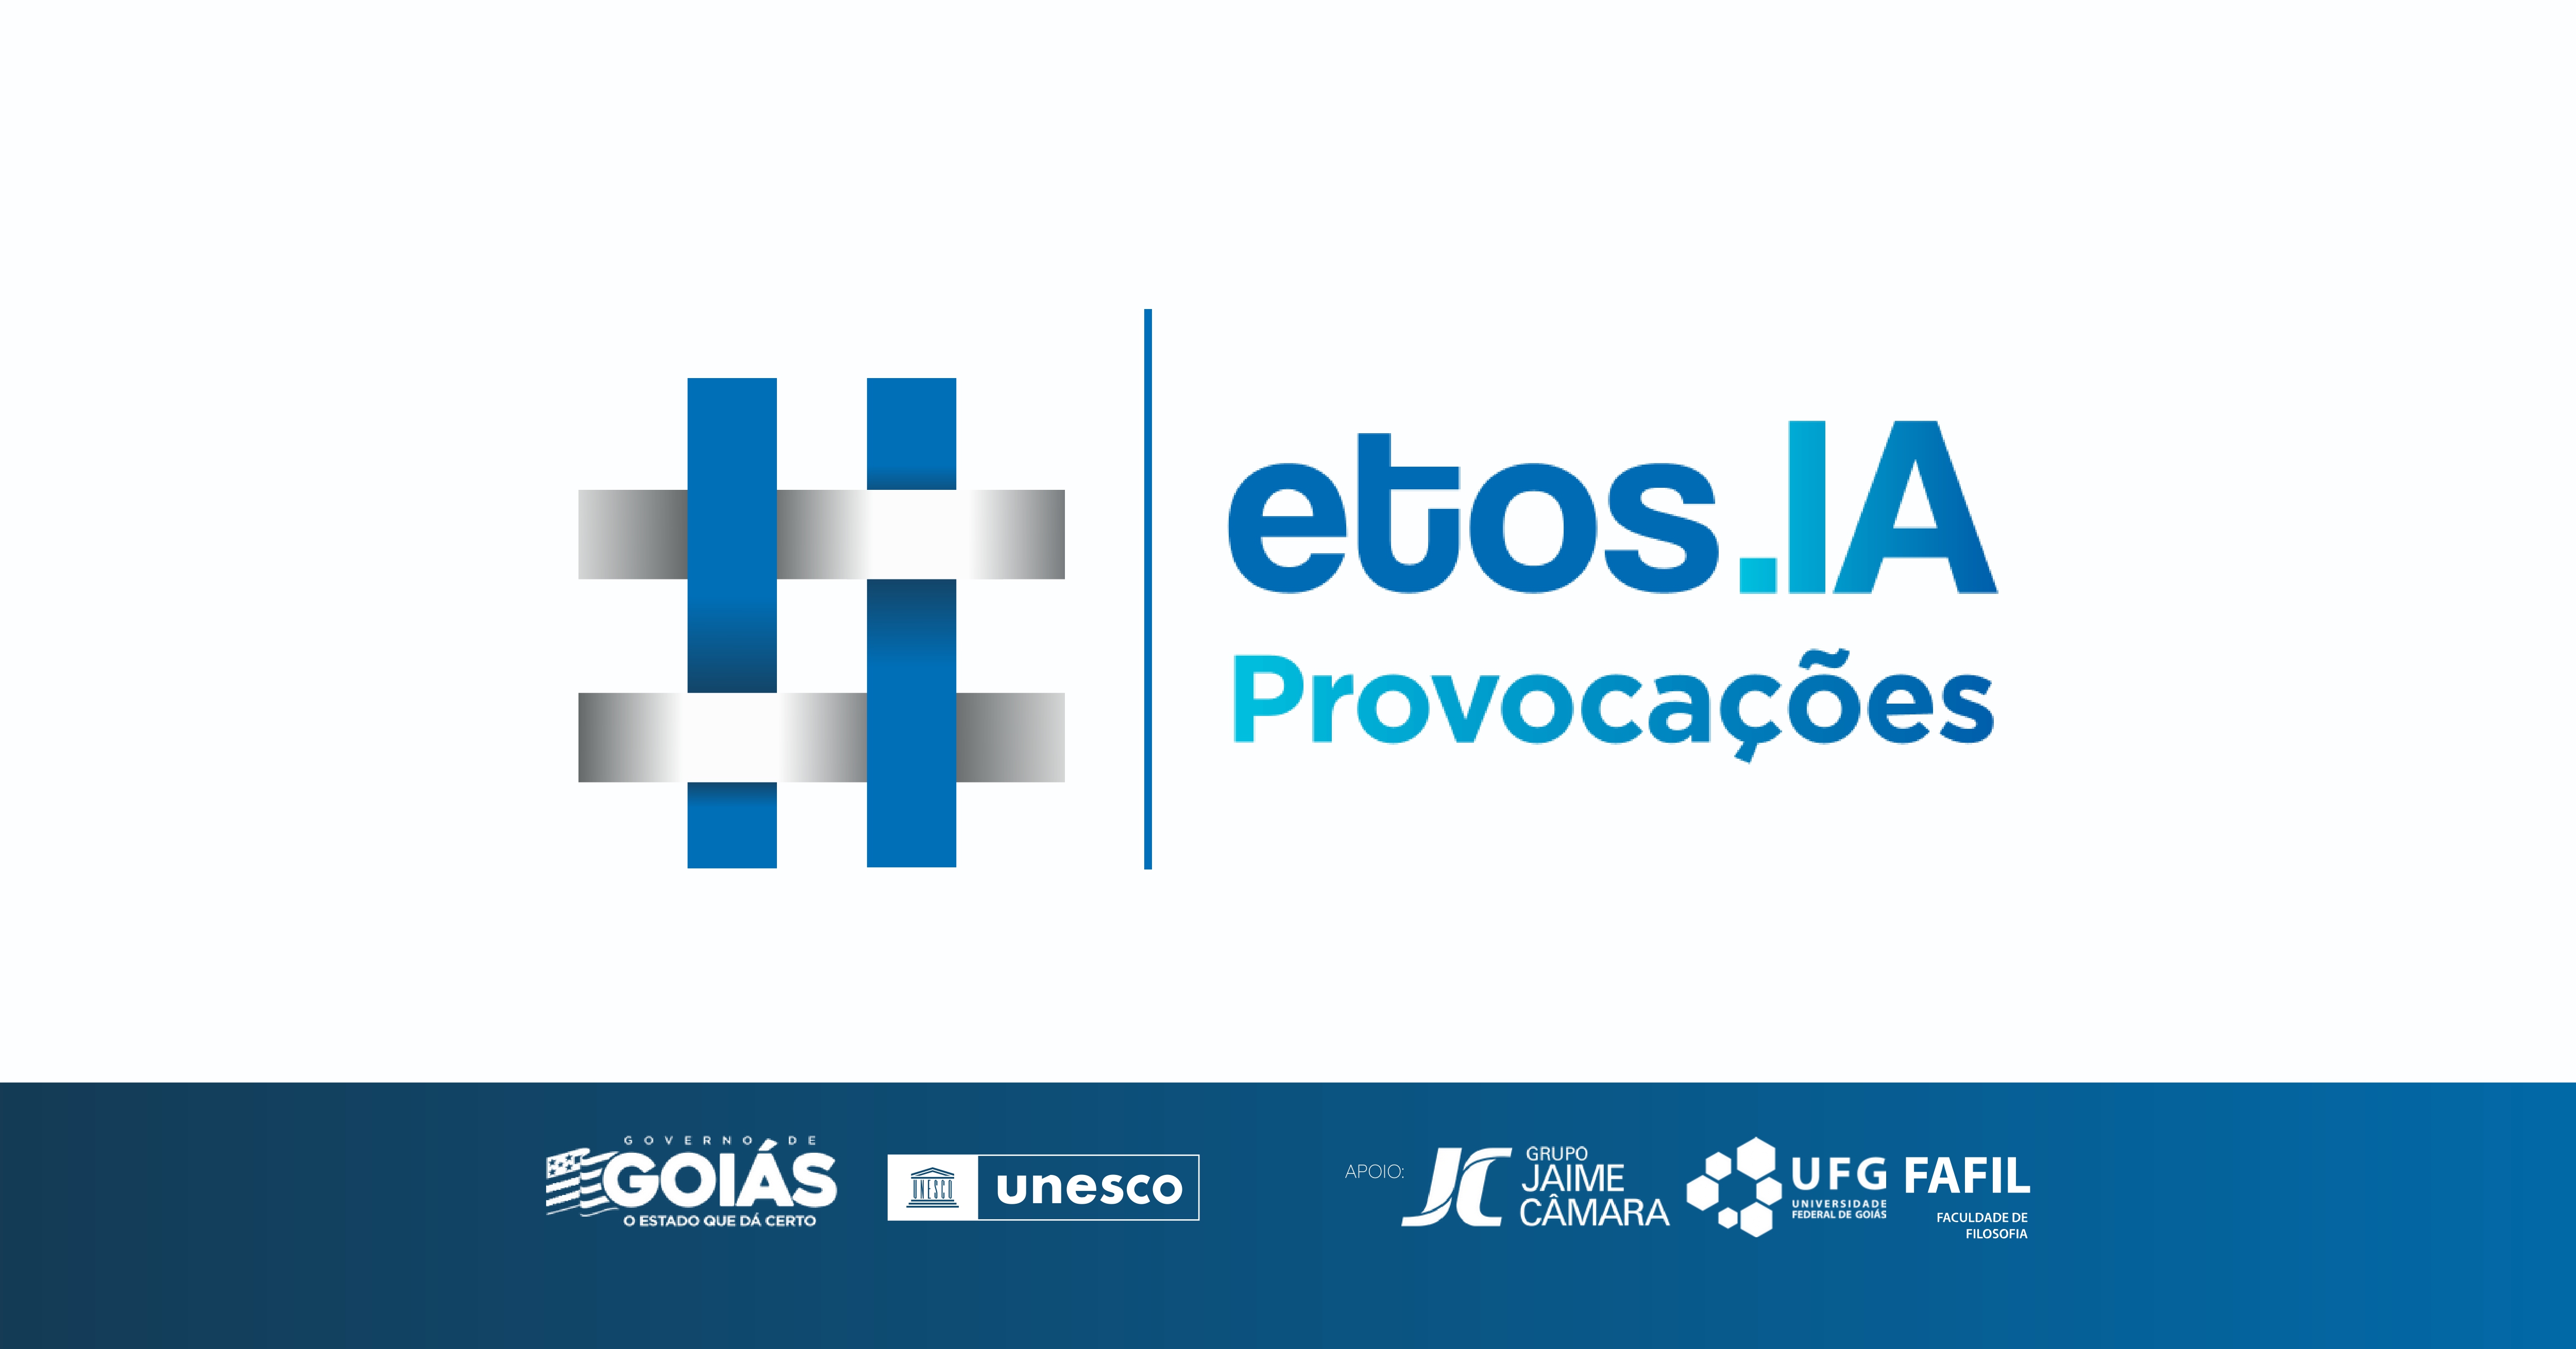 Governo de Goiás e UFG promovem a 2ª edição da Etos.IA – Provocações  